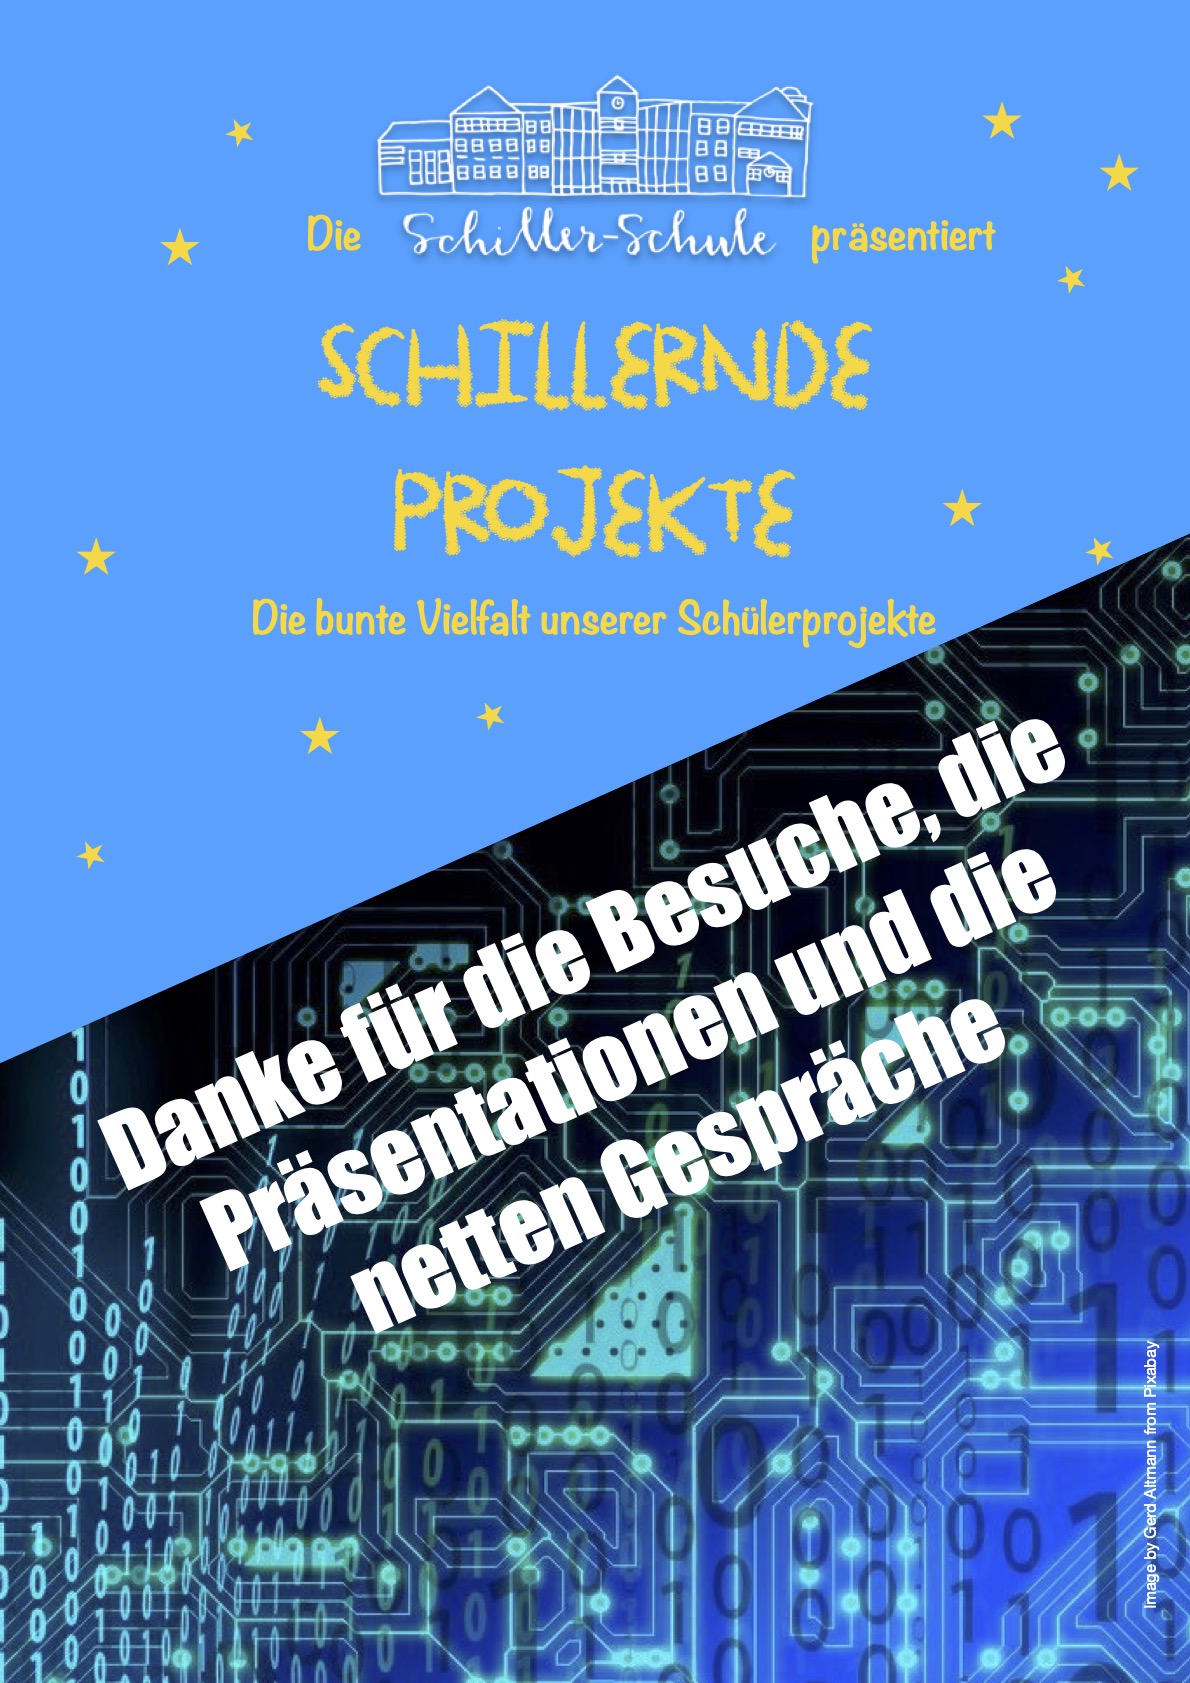 SchillerndeProjekte2021 E